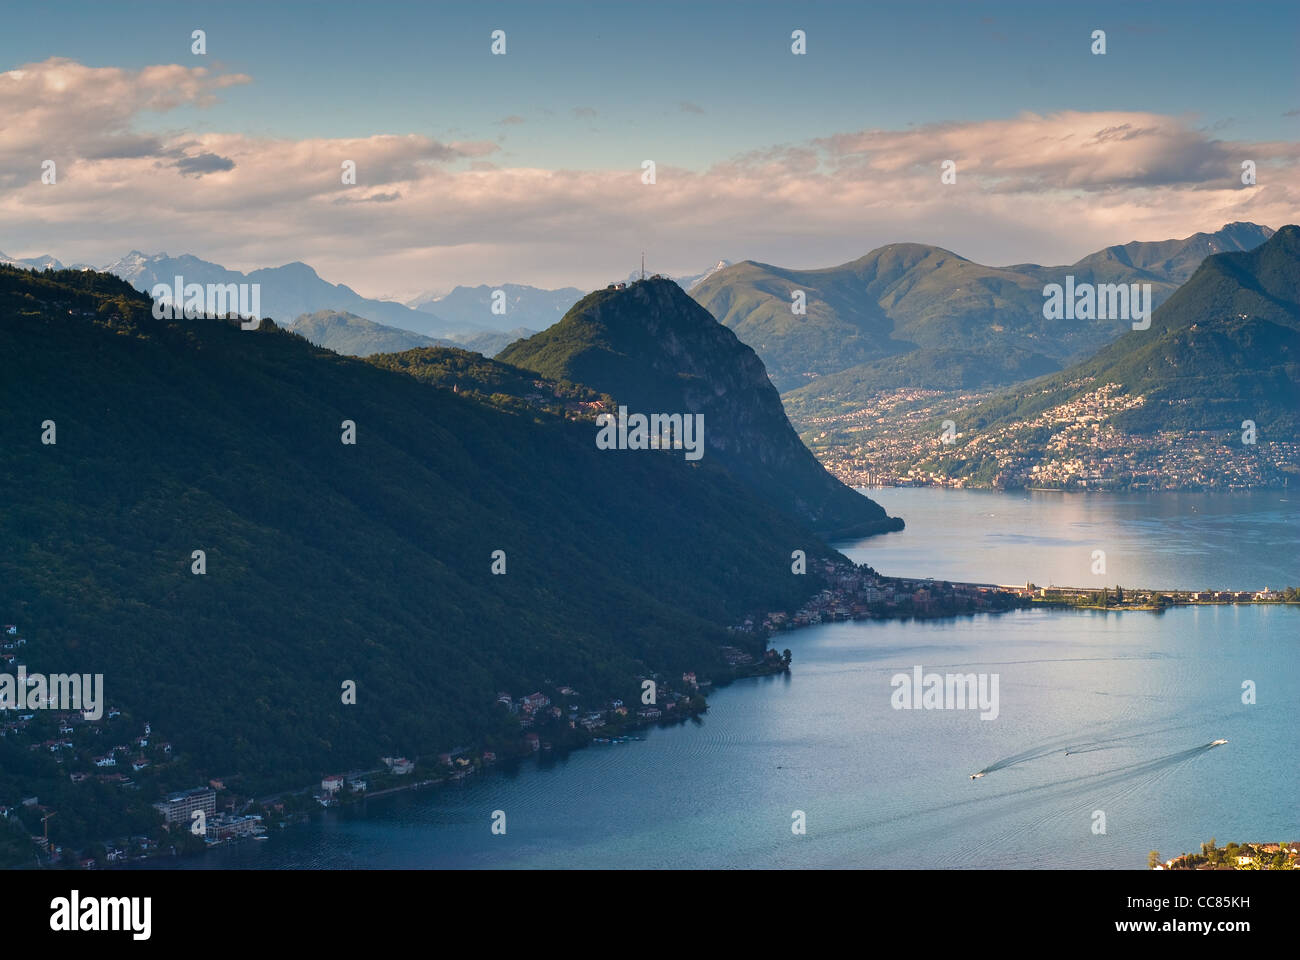 Monte San Salvatore and lake of Lugano. View from Serpiano, Tessin, Switzerland. Stock Photo